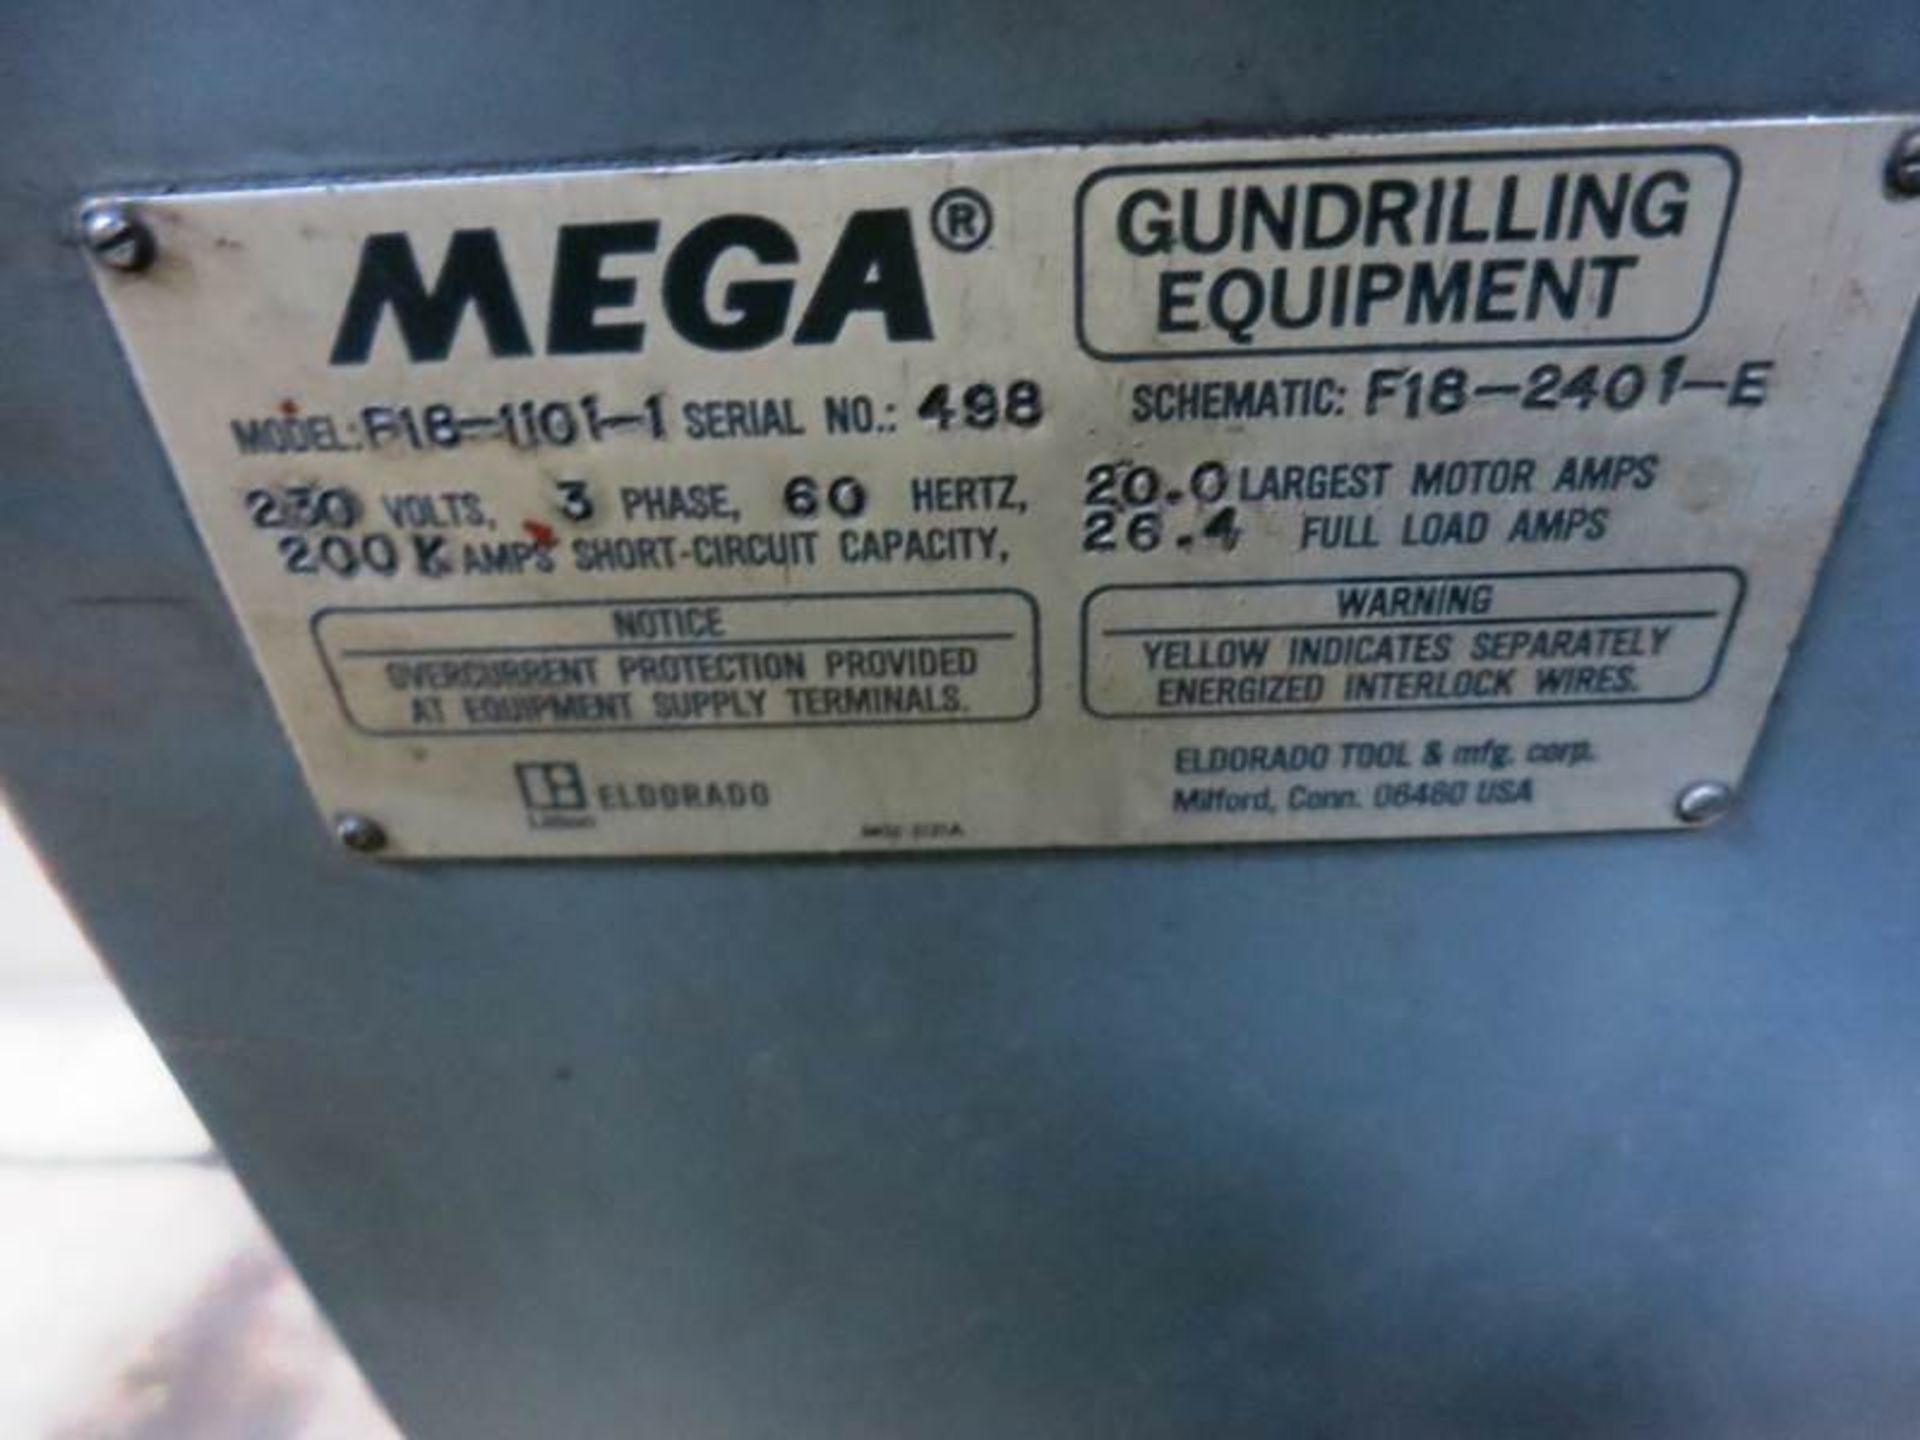 3/4" x 15" Eldorado Mega M-75-1032 Single Spindle Gun Drilling Machine, S/N 629 - Image 5 of 10